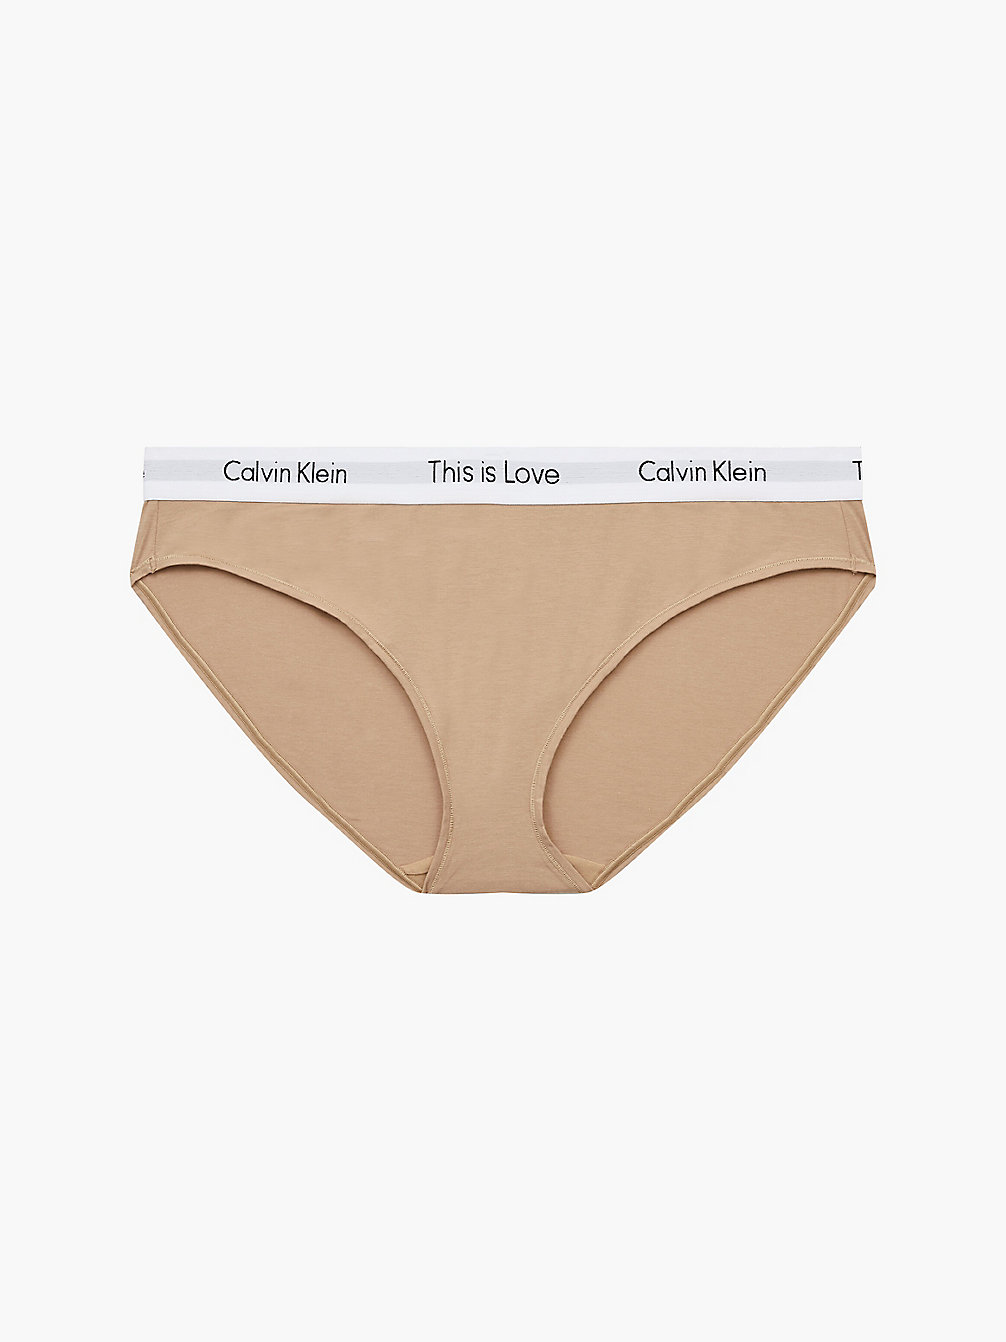 TRAVERTINE Plus Size Bikini Brief - Pride undefined women Calvin Klein